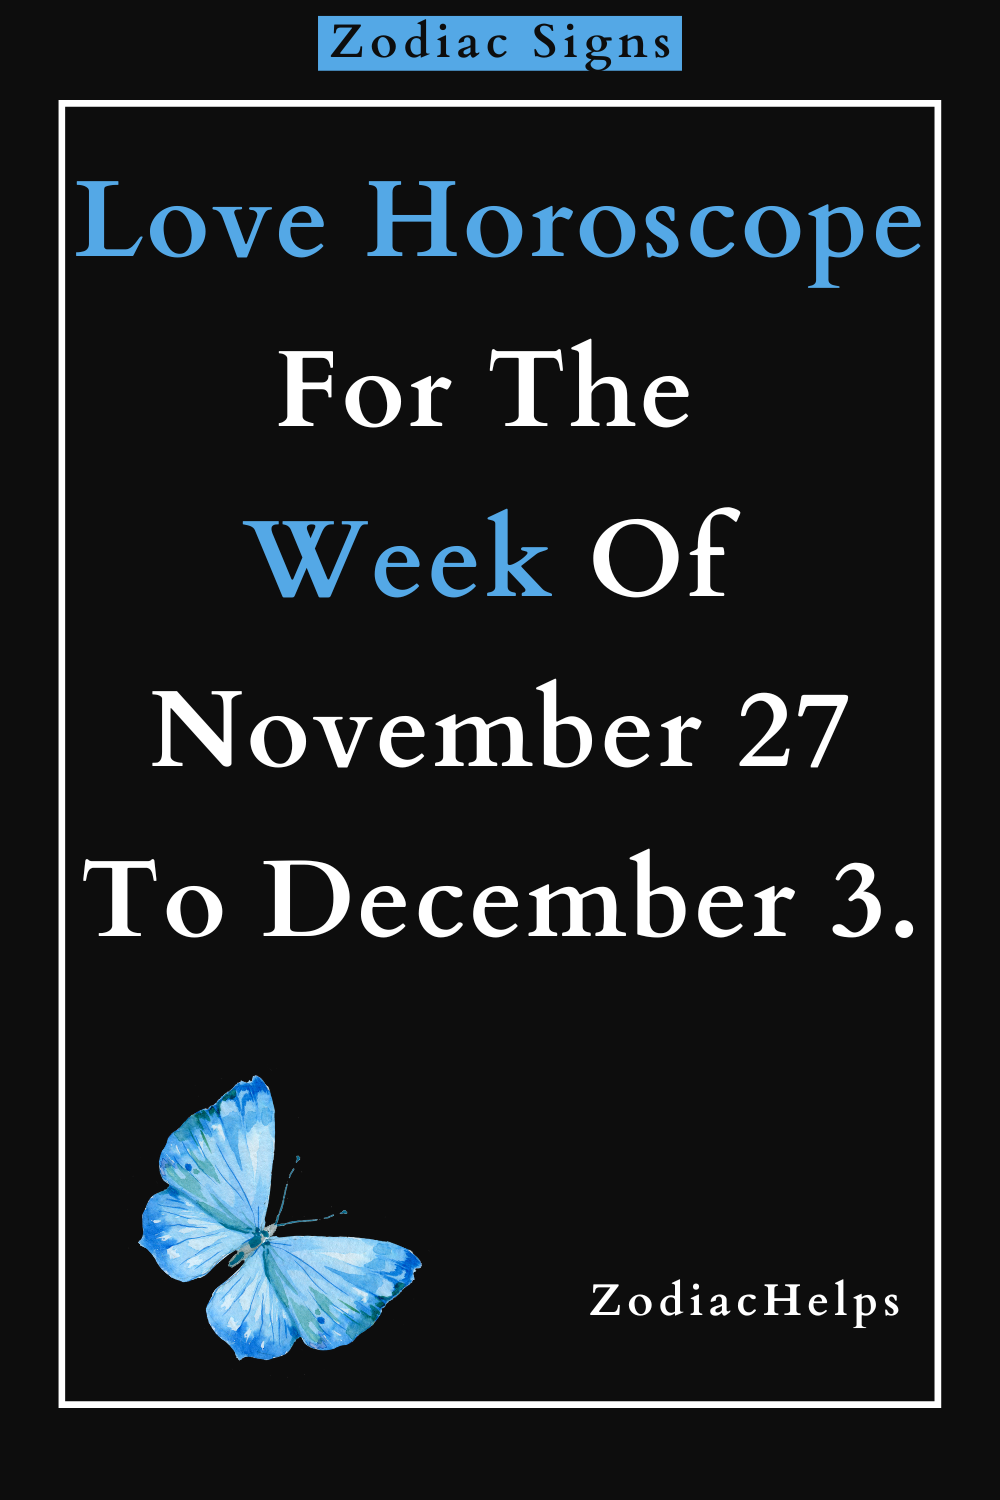 Love Horoscope For The Week Of November 27 To December 3.